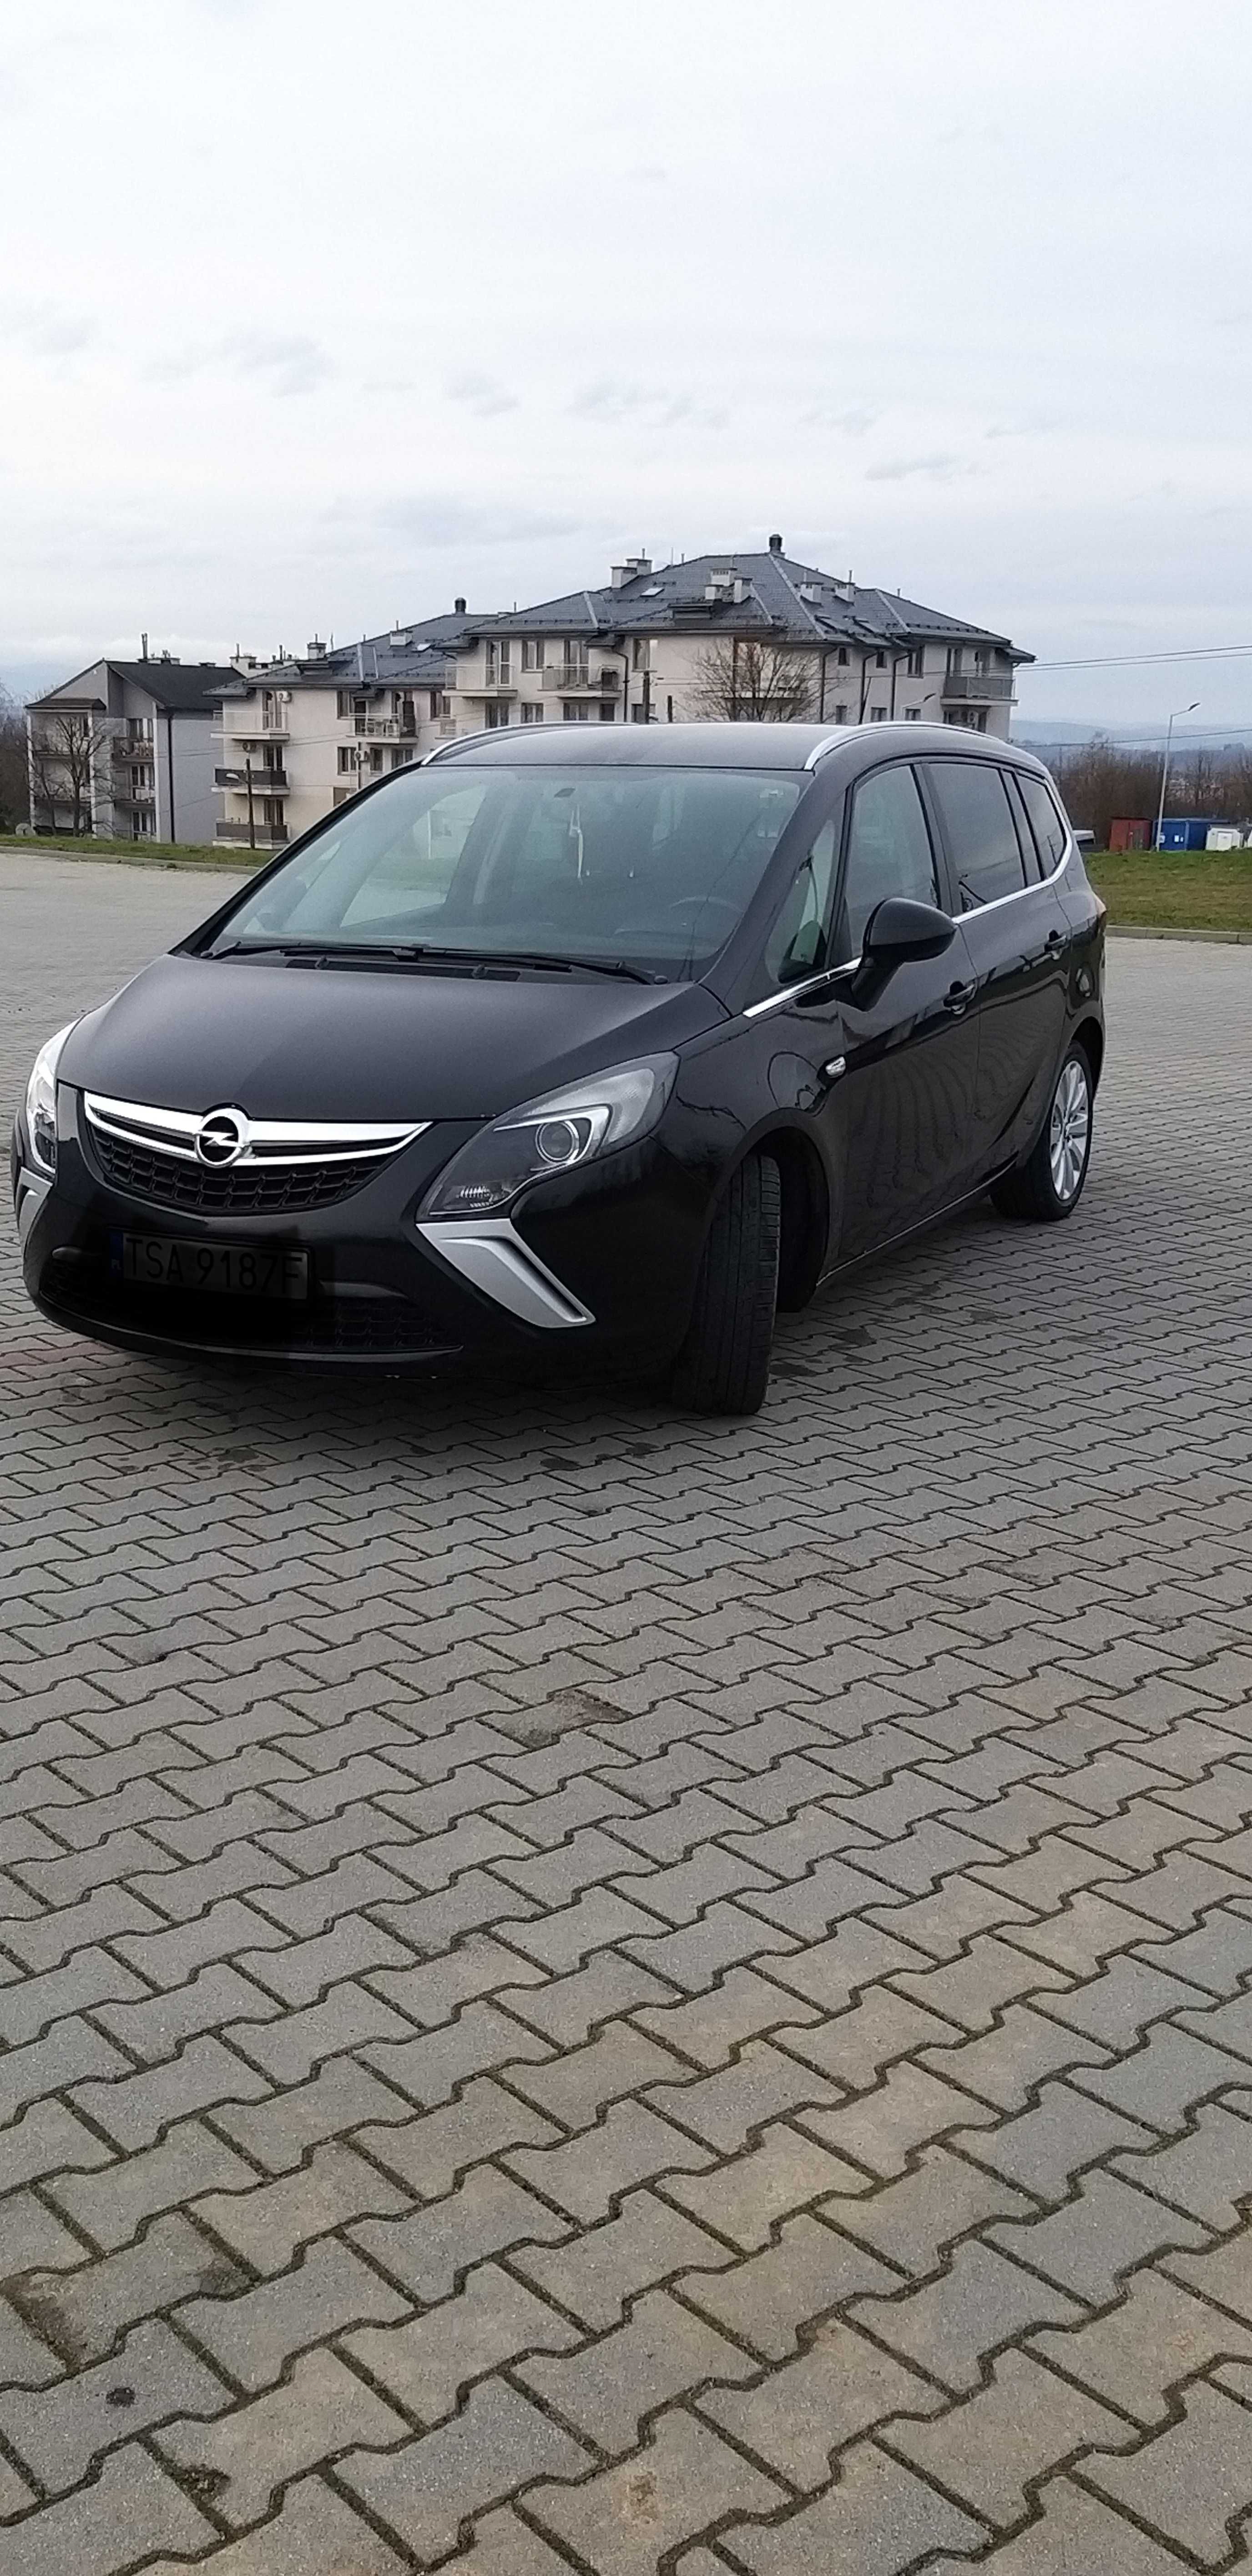 Opel Zafira C 1.4 turbo - 7 osobowy automat,klima,xenony